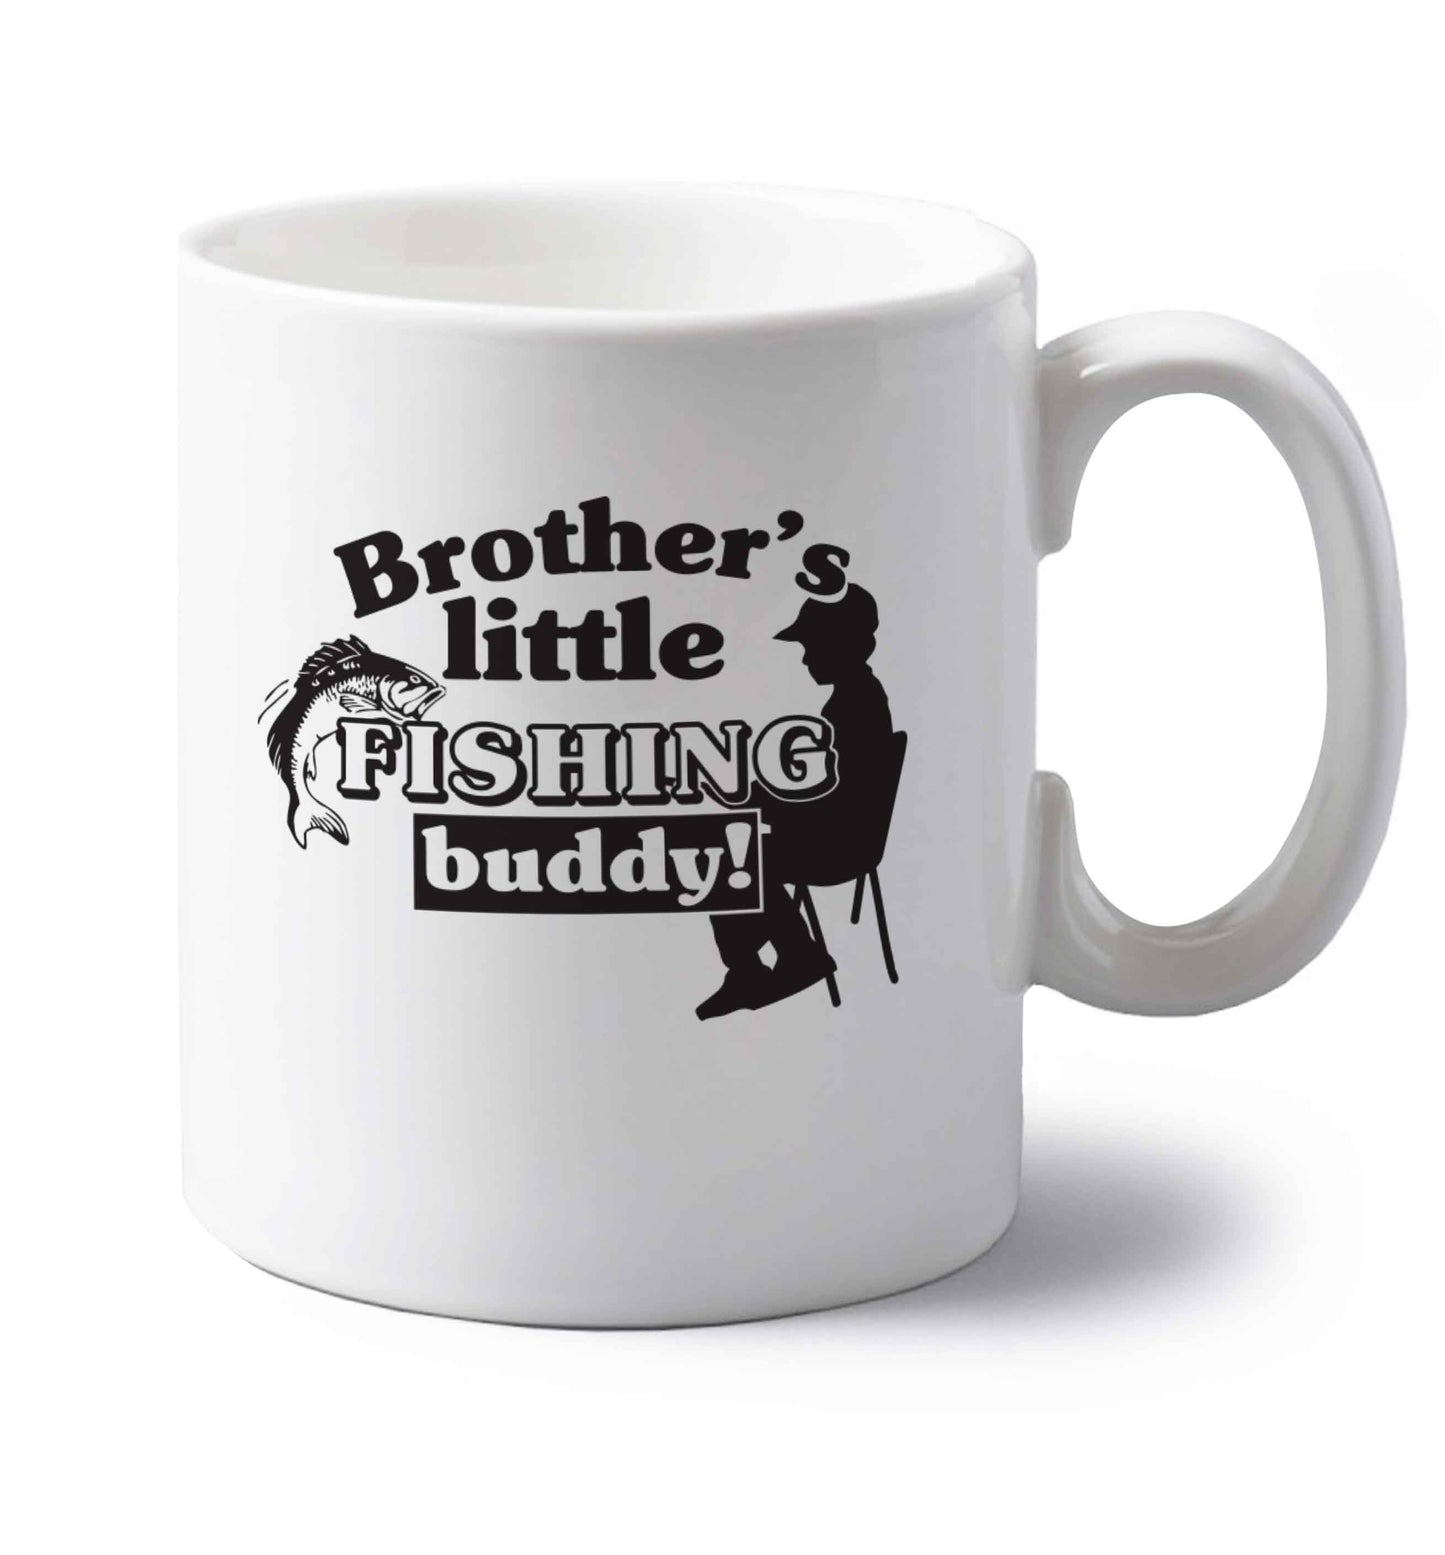 Brother's little fishing buddy left handed white ceramic mug 